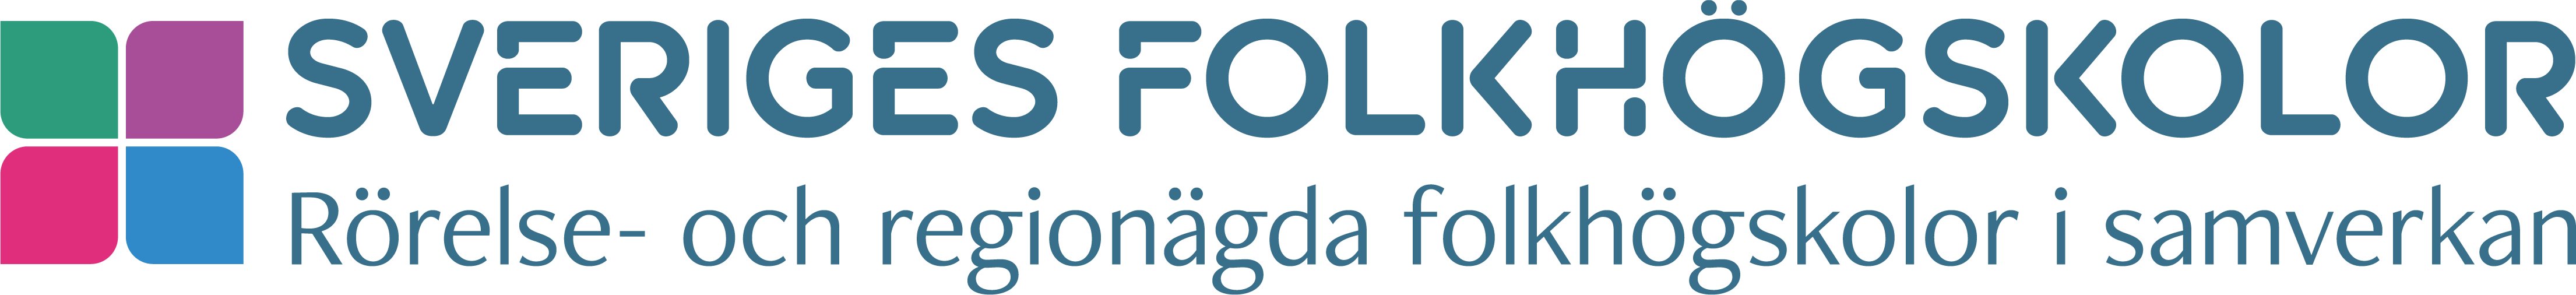 Logotyp Sveriges folkhögskolor